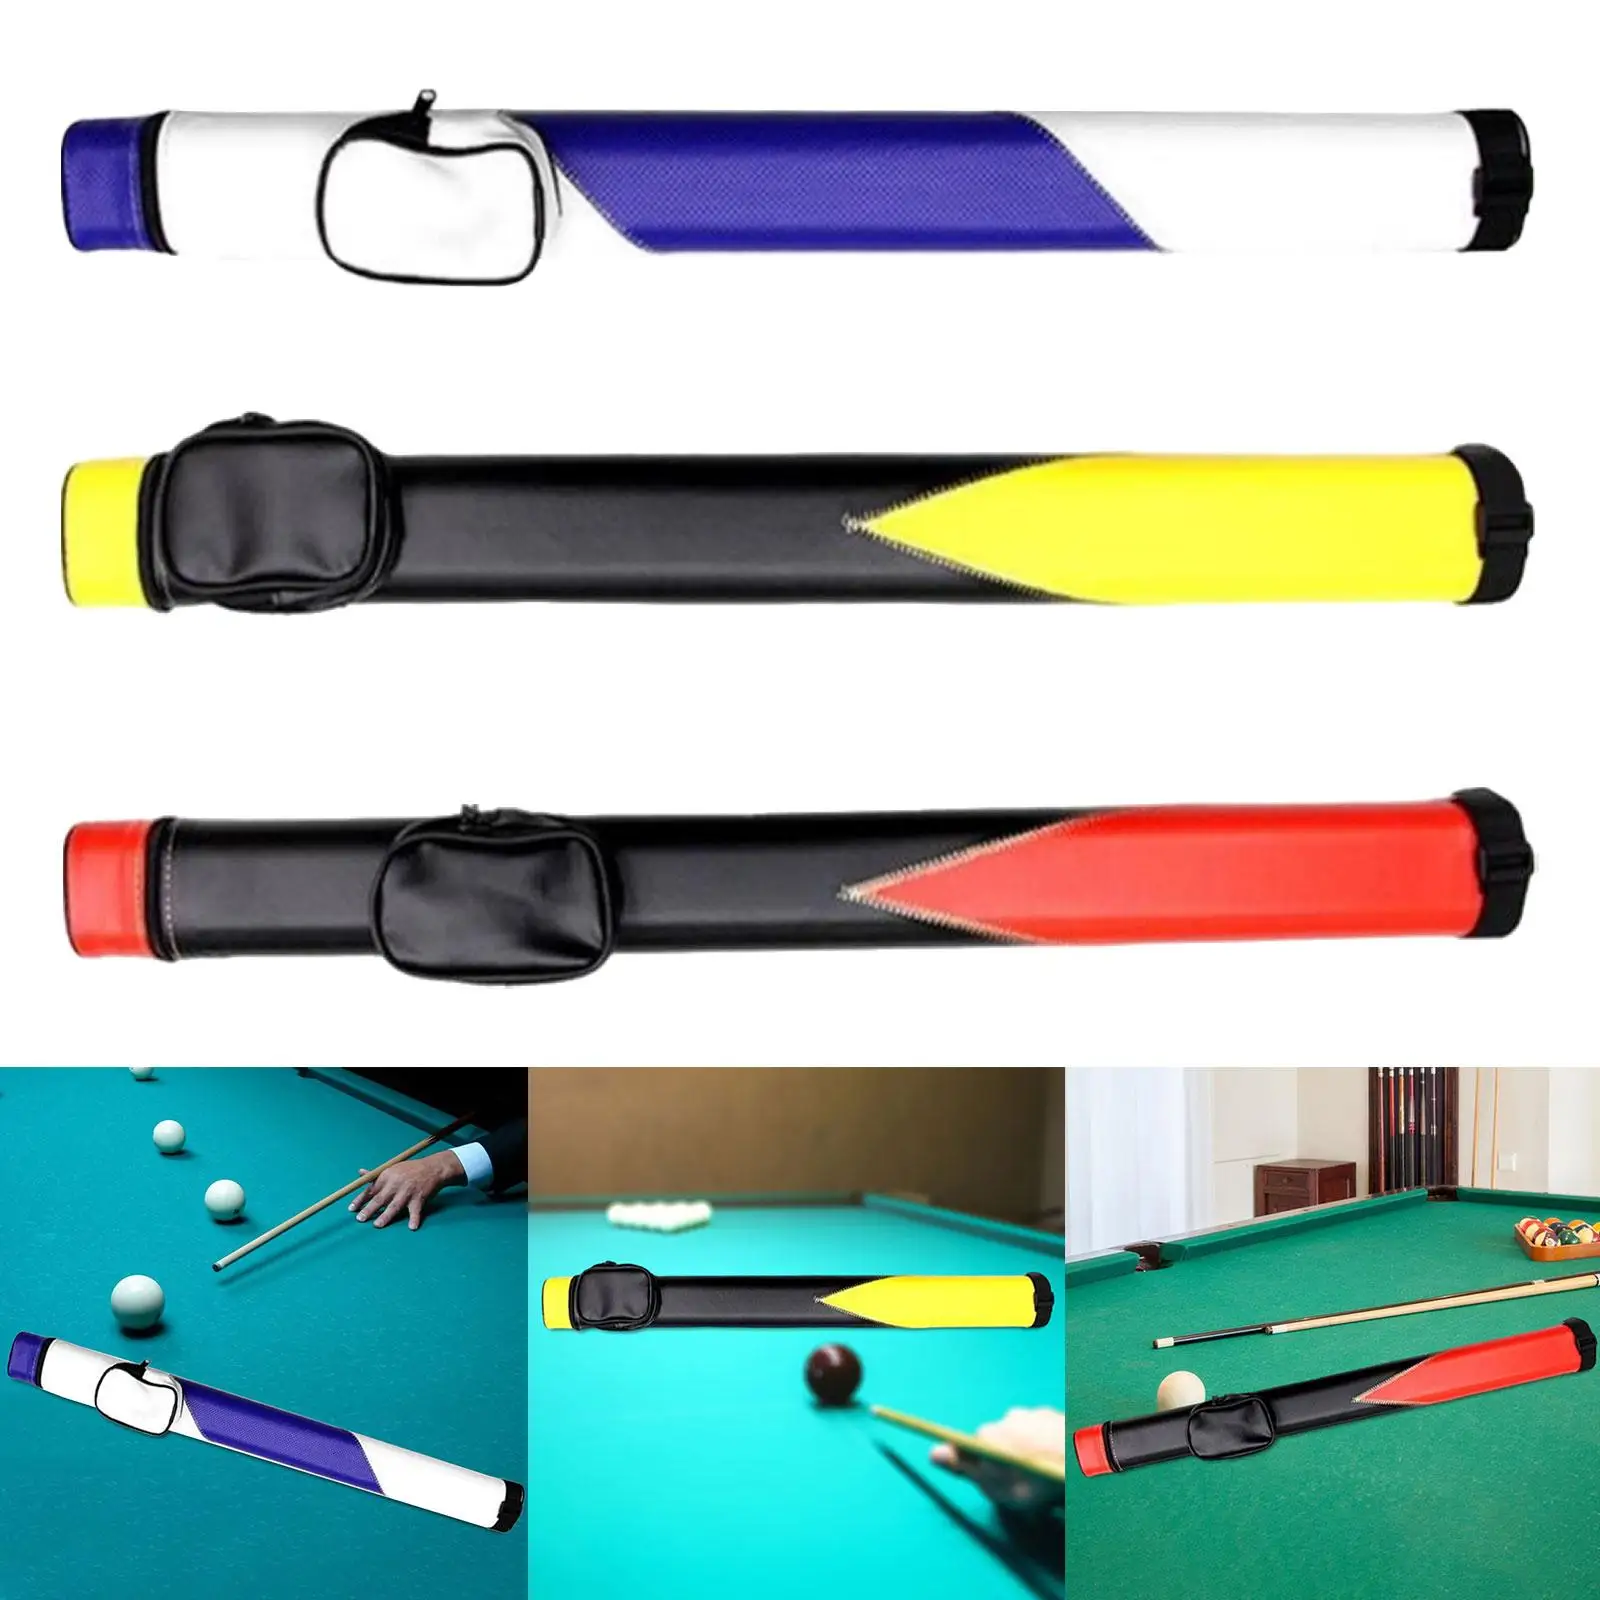 Billiards Pool Cue Case Billiard Pool Cue Bag Snooker Cue Storage Pouch Adjustable Shoulder Strap for Outdoor Billiard Stick Rod